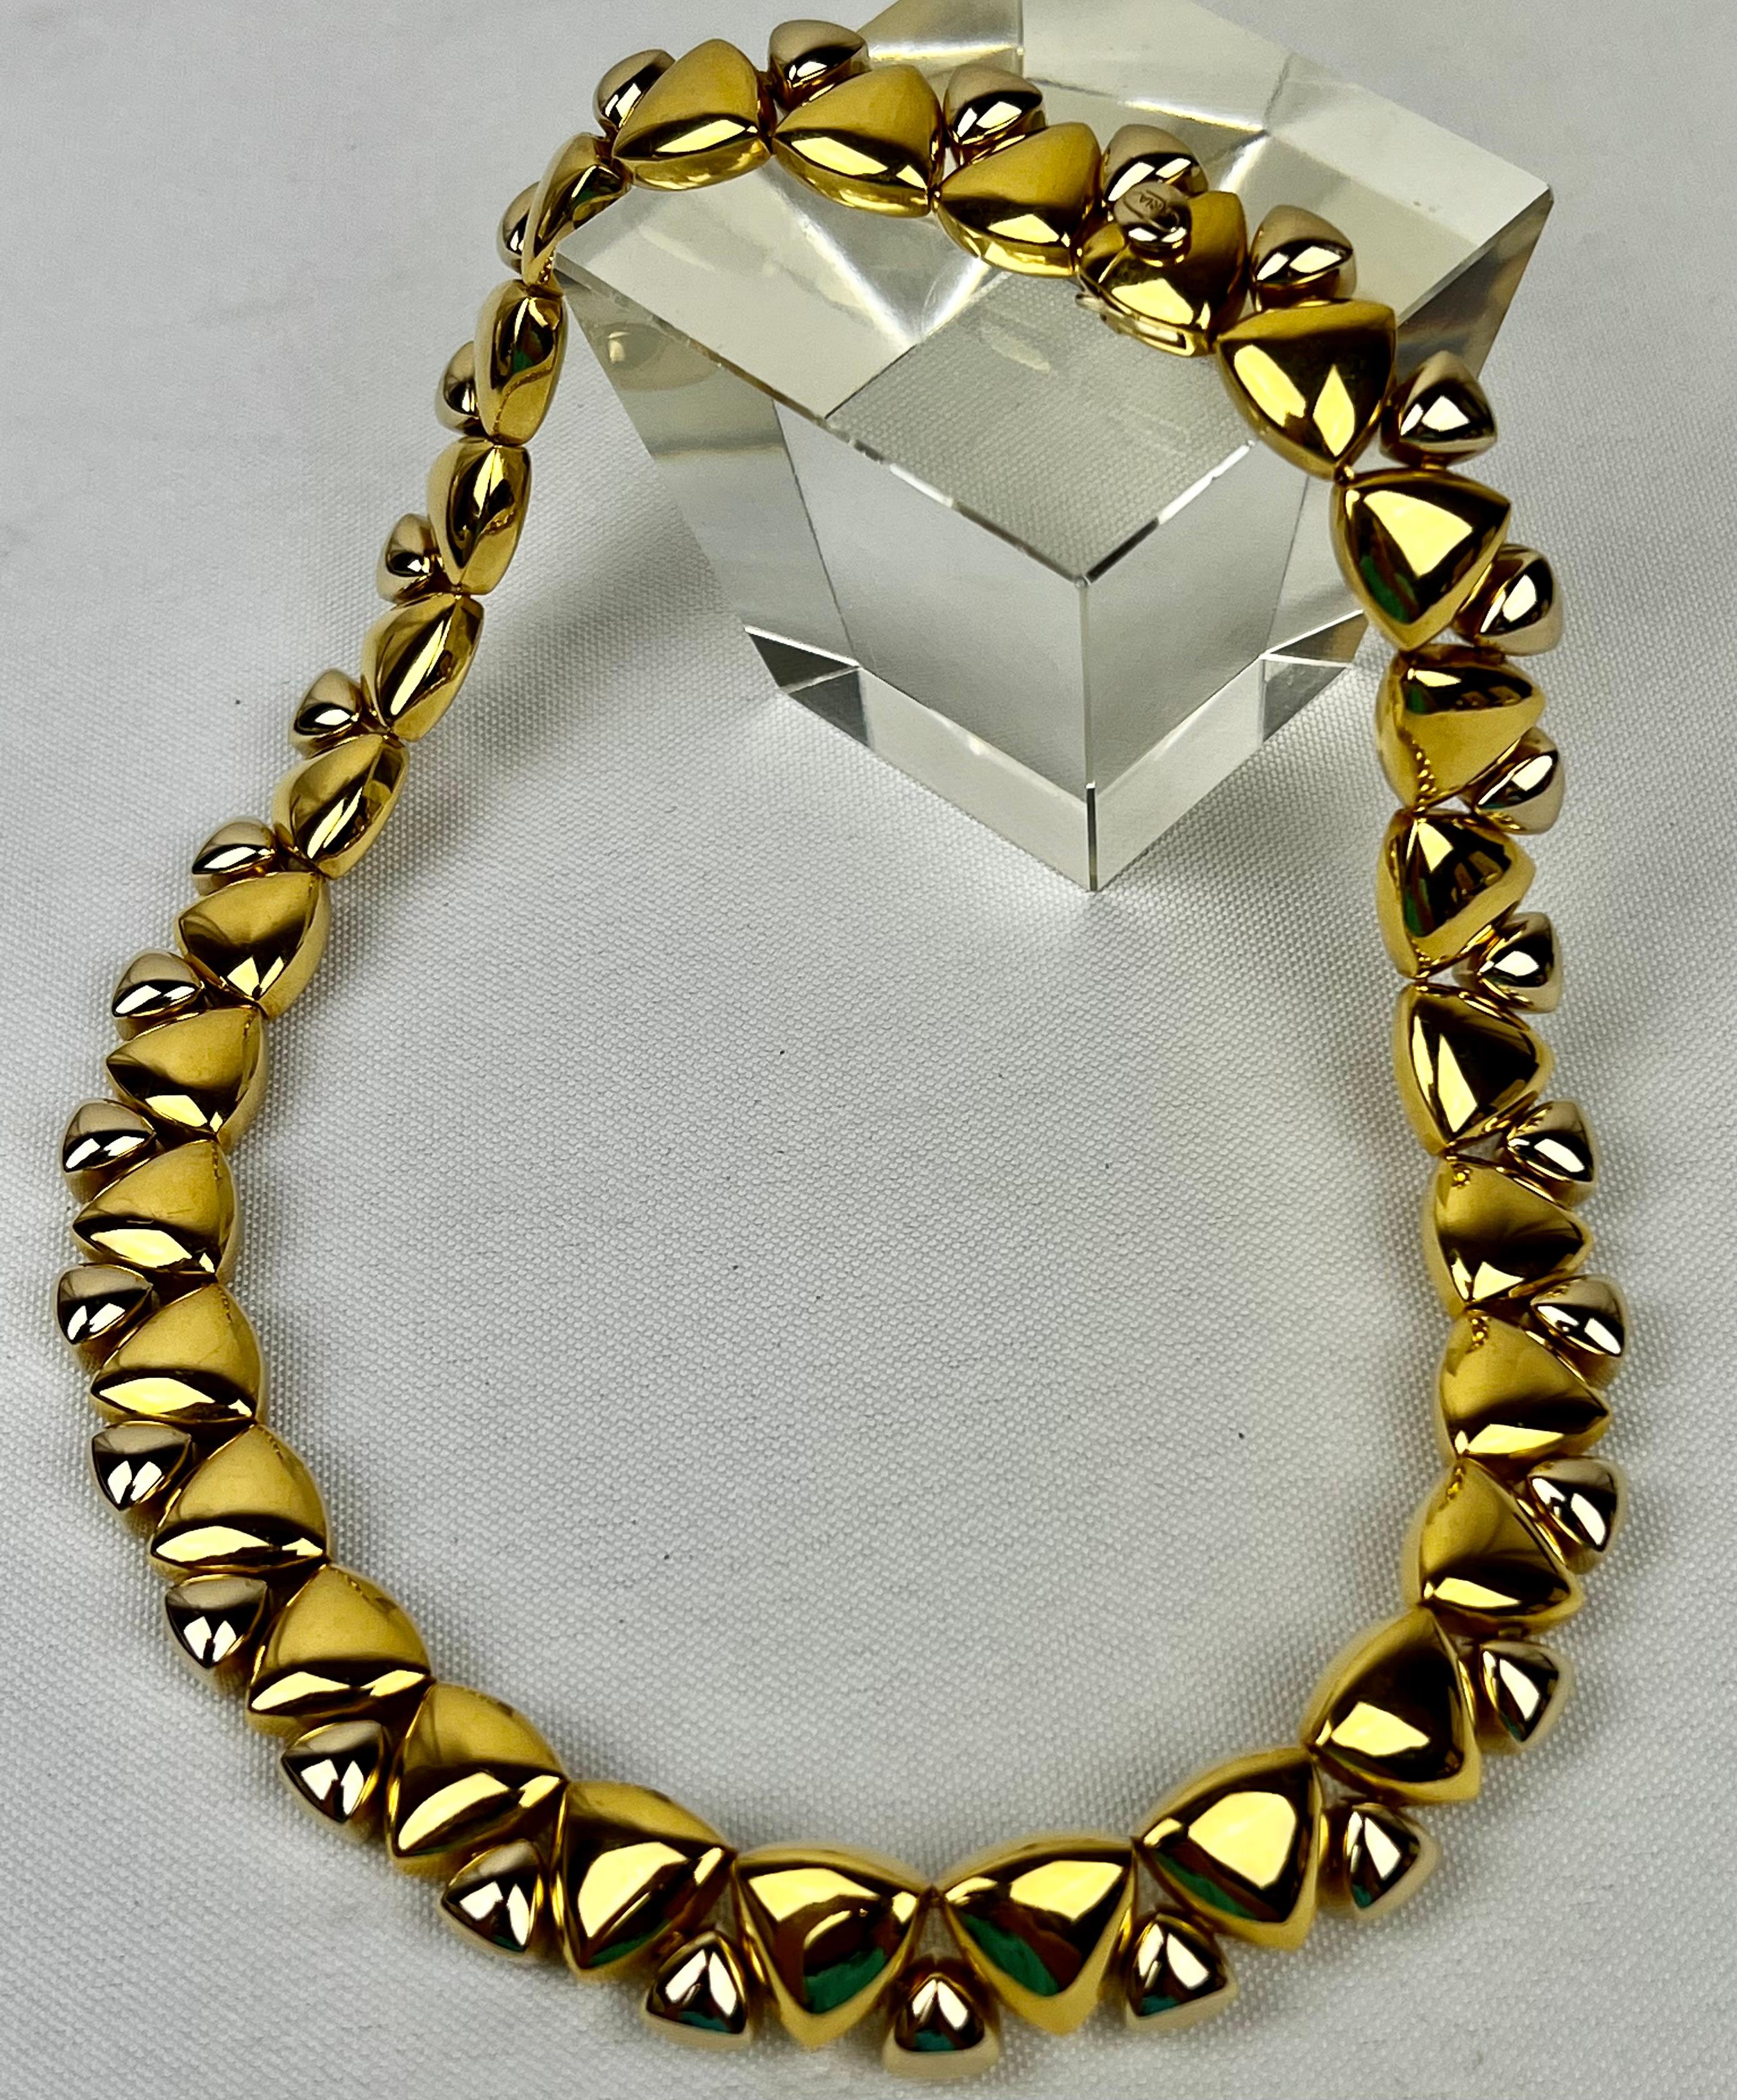 Le collier en or bicolore de dix-huit carats est signé KRIA.   Le collier se compose de 29 maillons identiques d'un diamètre intérieur de 5